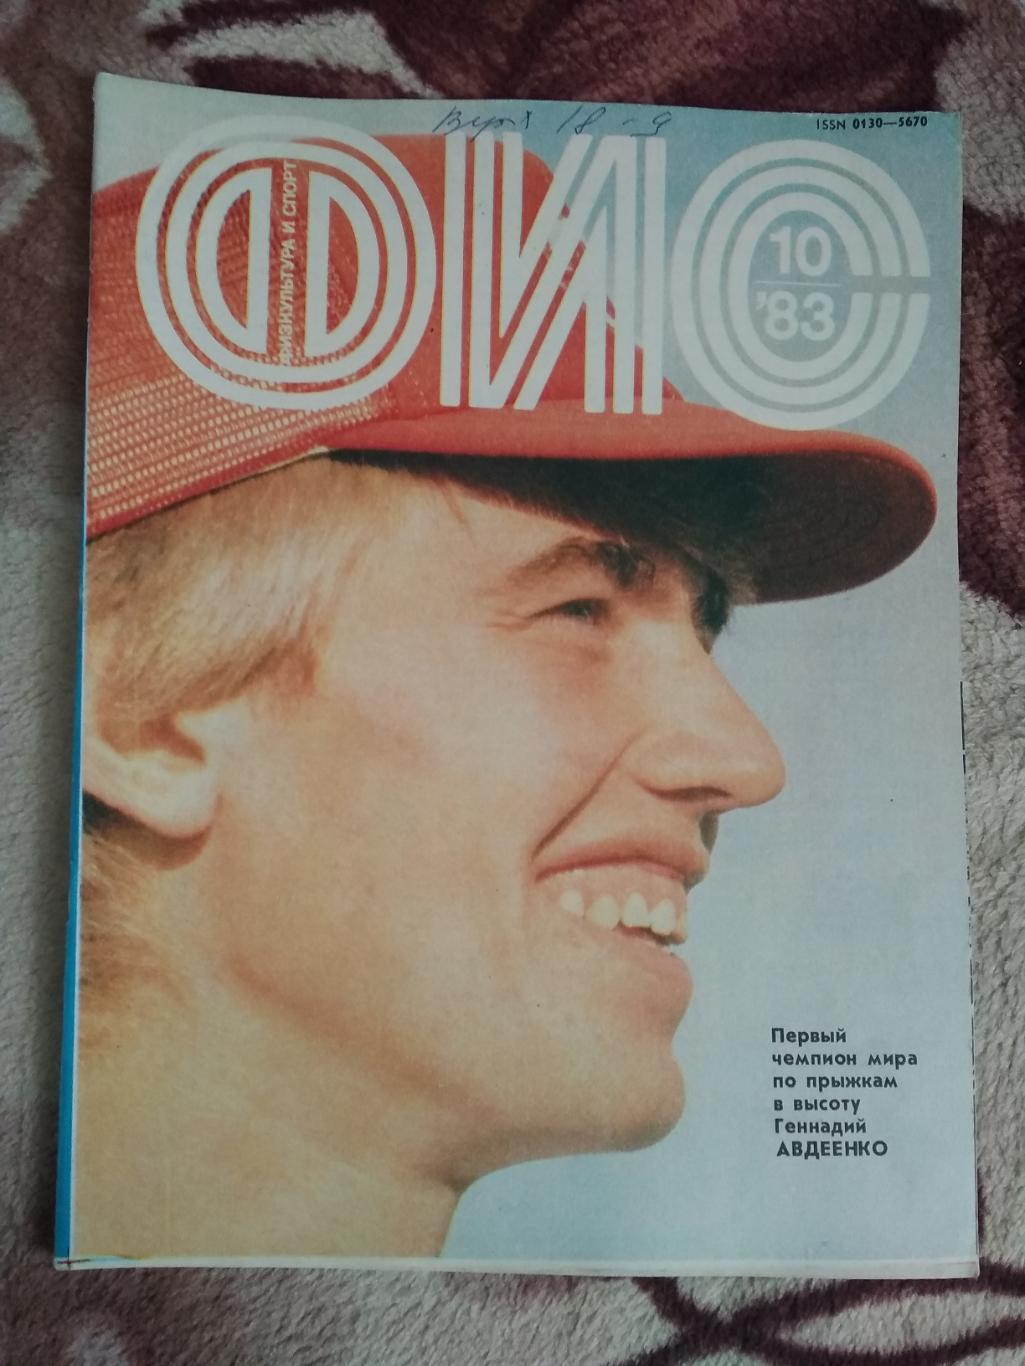 Журнал.Физкультура и спорт № 10 1983 г. (ФиС).